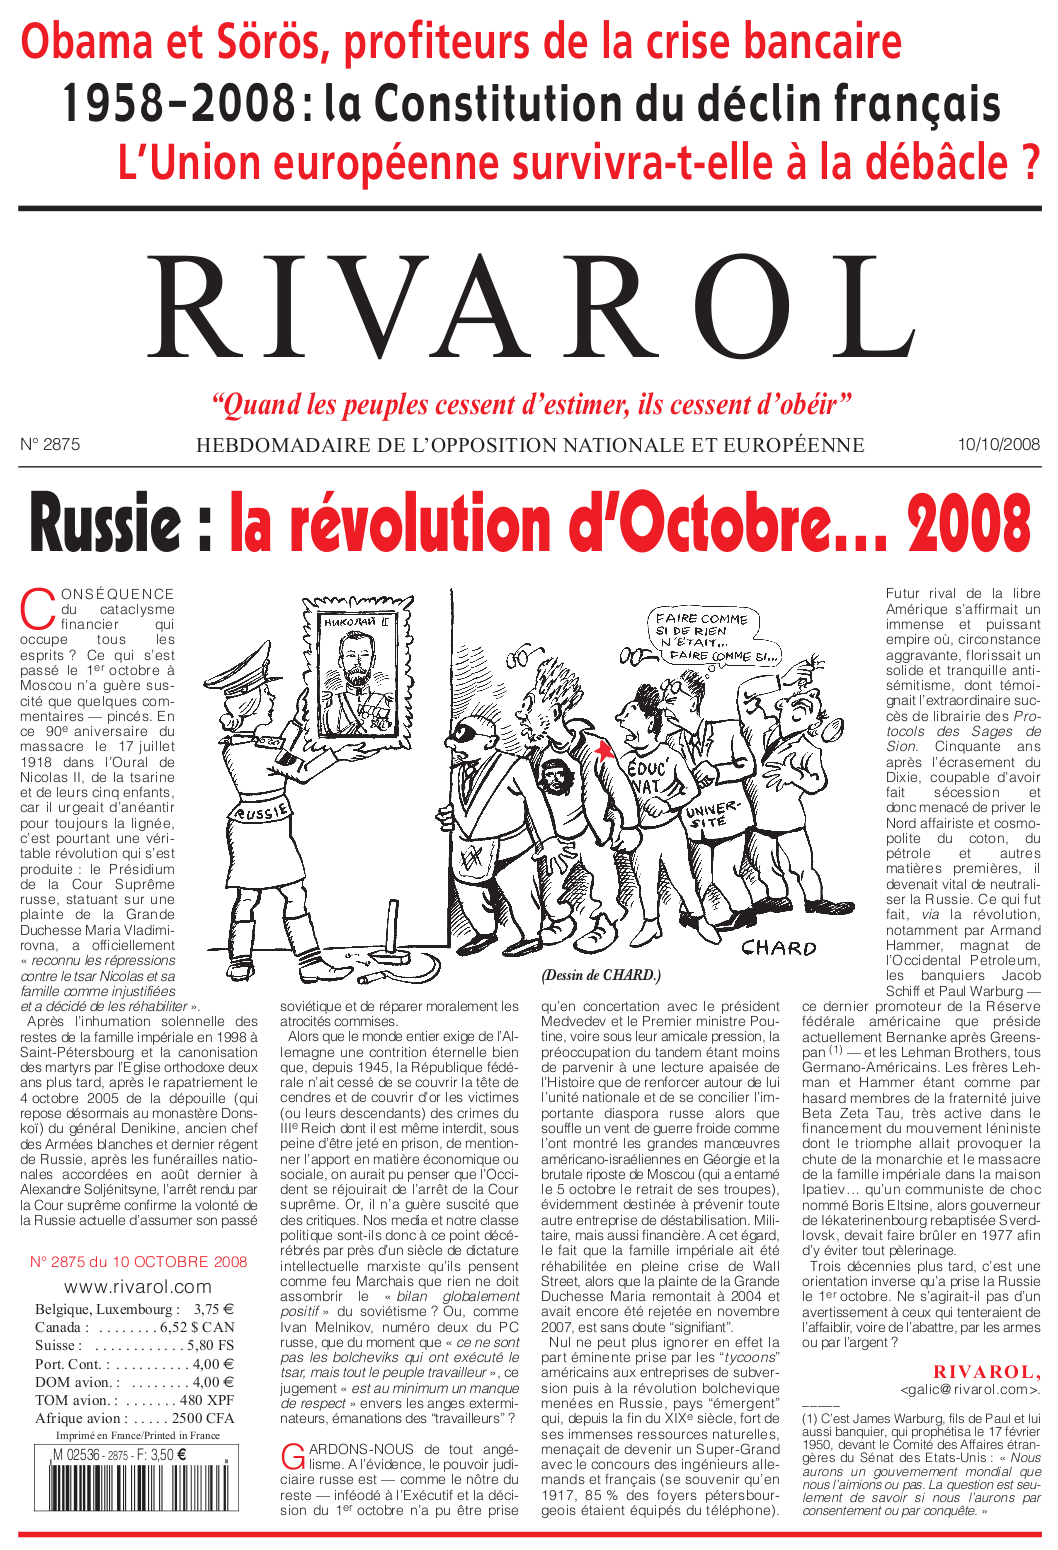 Rivarol n°2875 version numérique (PDF)